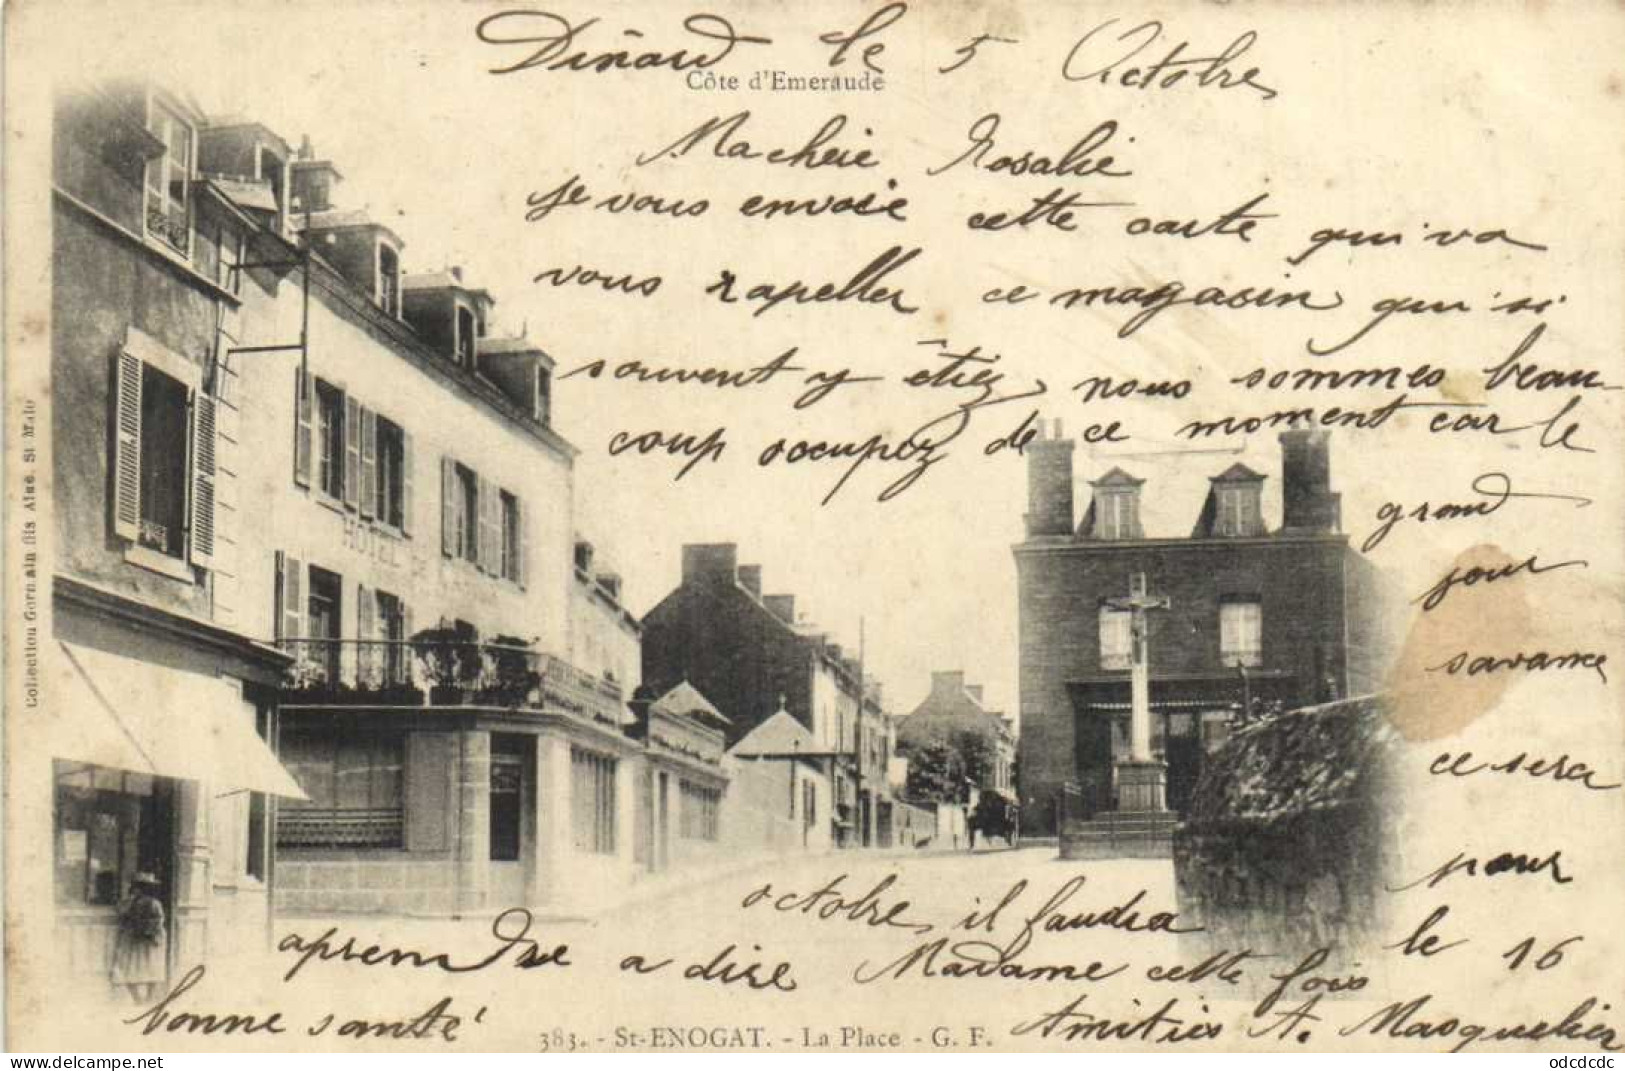 DESTOCKAGE Avant fermeture boutique BON LOT 100 CPA FRANCE Pionnières (1900 1904) A dos non partagé (toutes scannées )